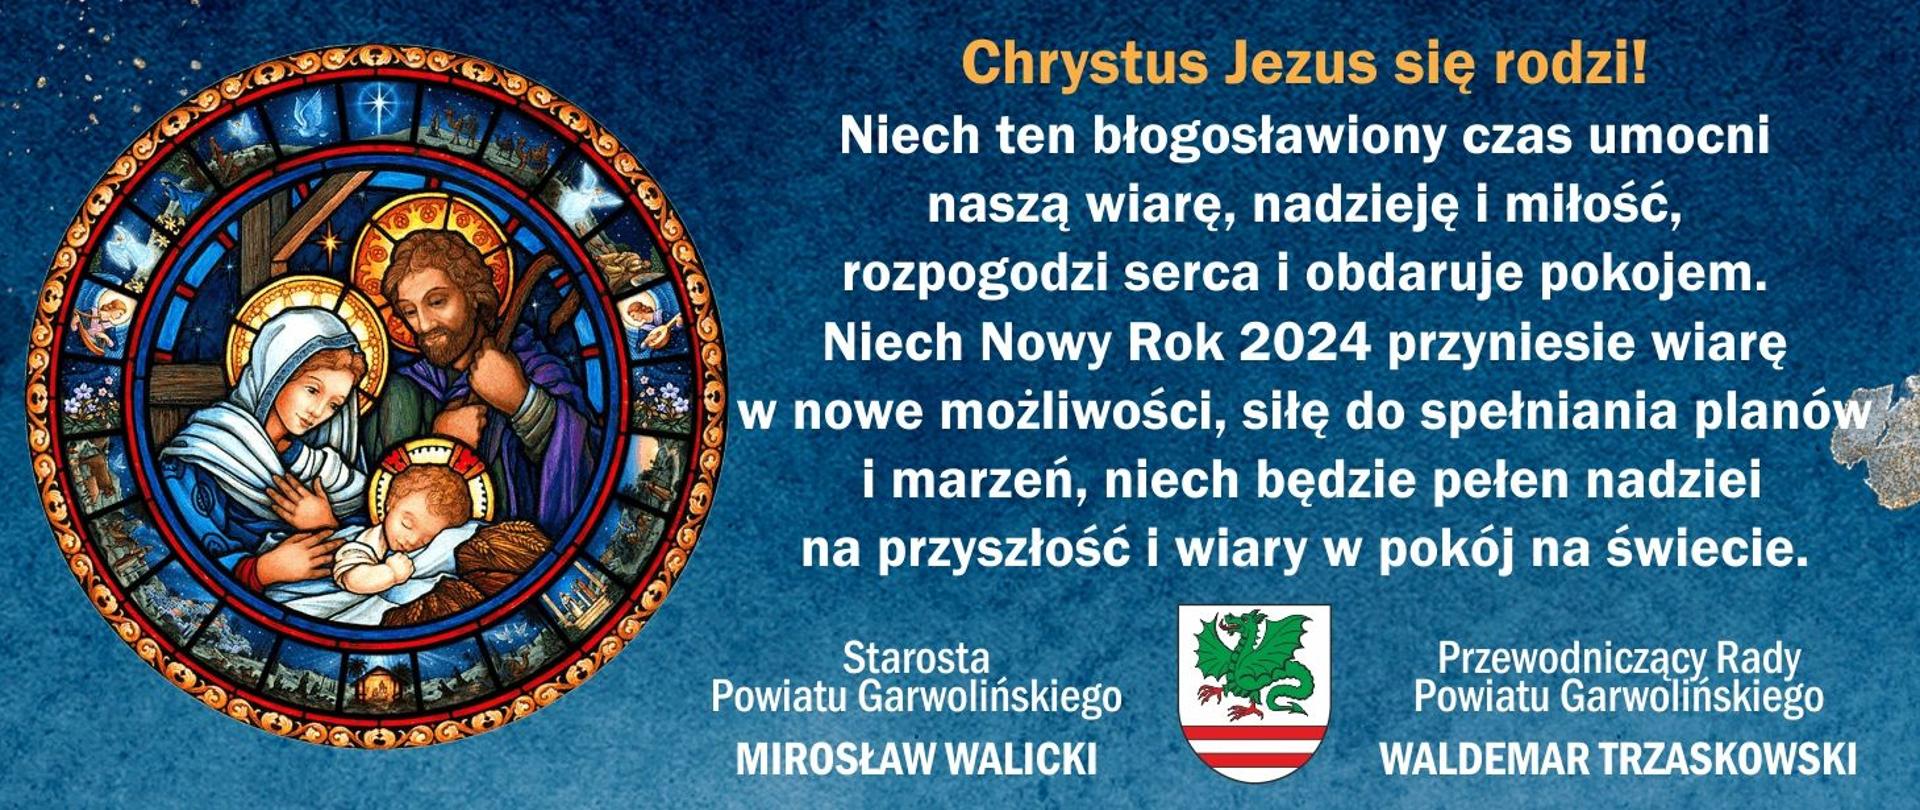 Życzenia świąteczne dla Mieszkańców Powiatu Garwolińskiego 